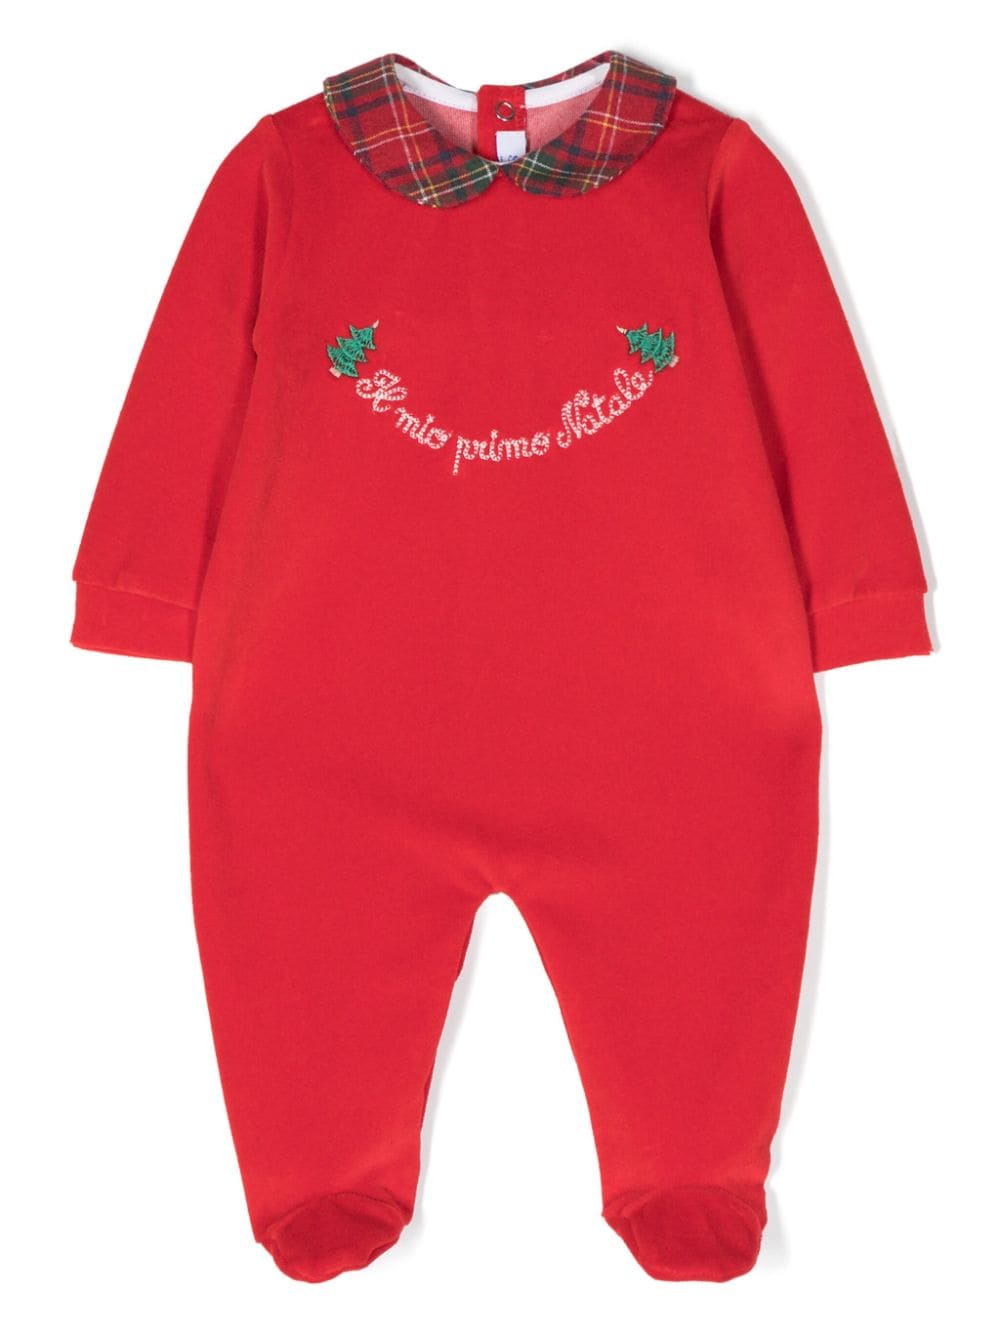 Siola Babies' 标语刺绣长袖运动套装 In Red